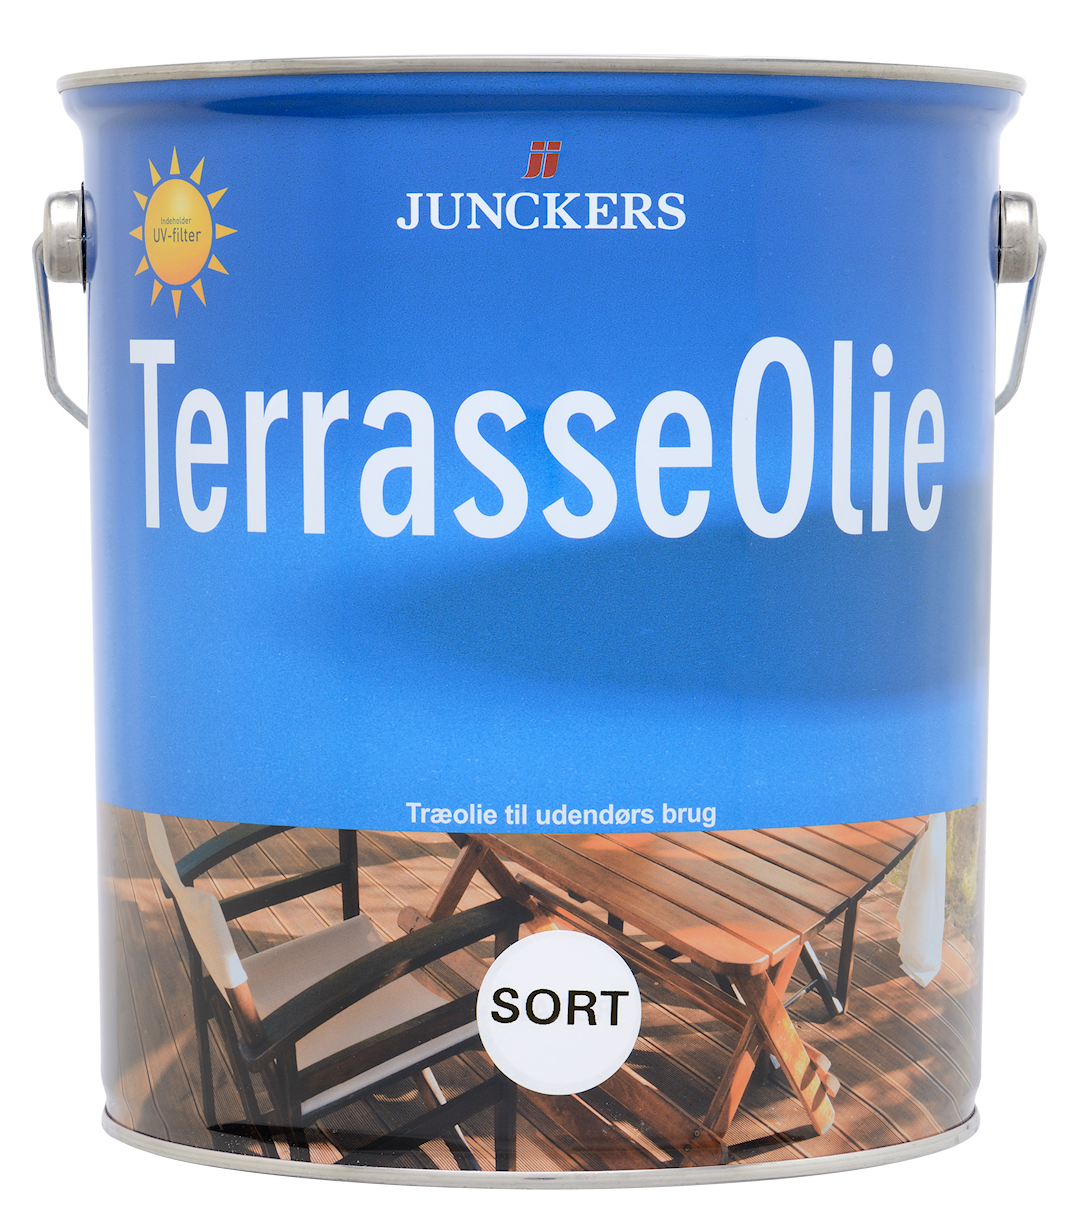 2: Junckers Terrasseolie Sort 5 liter